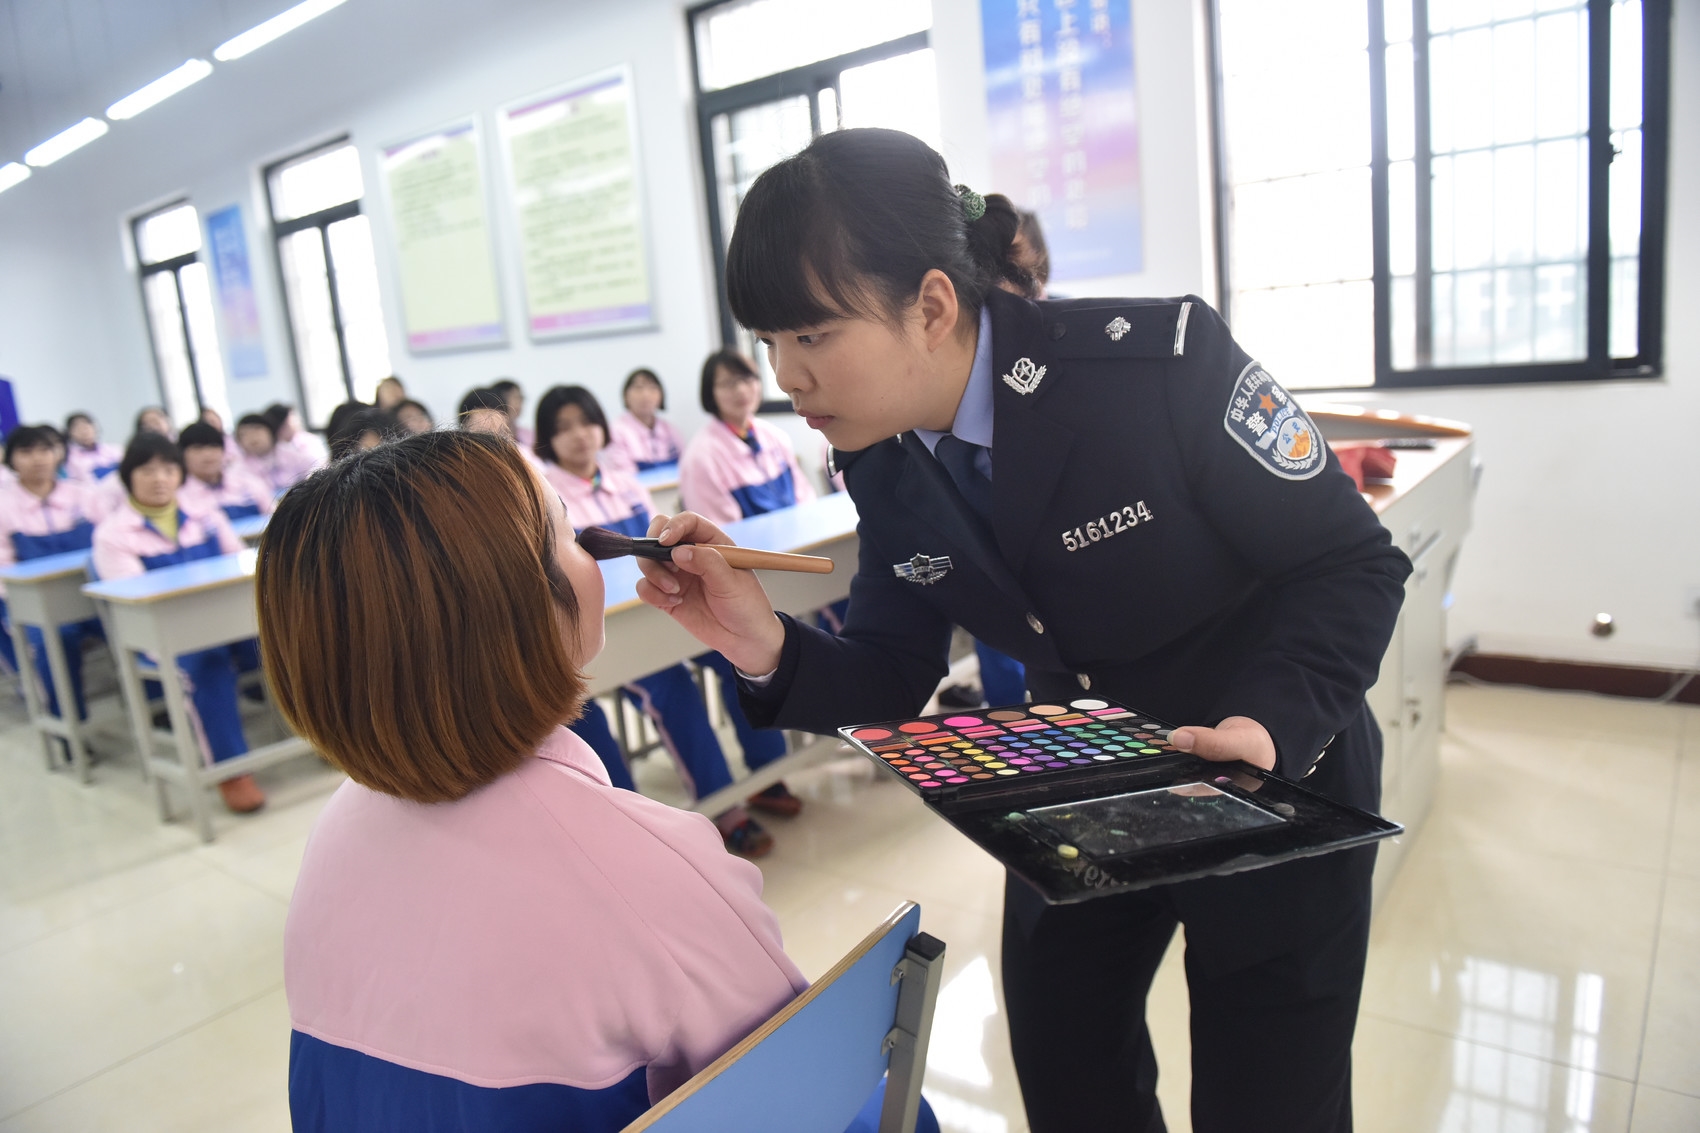 人员开展美妆就业培训类似的故事也发生在四川省女子强制隔离戒毒所内